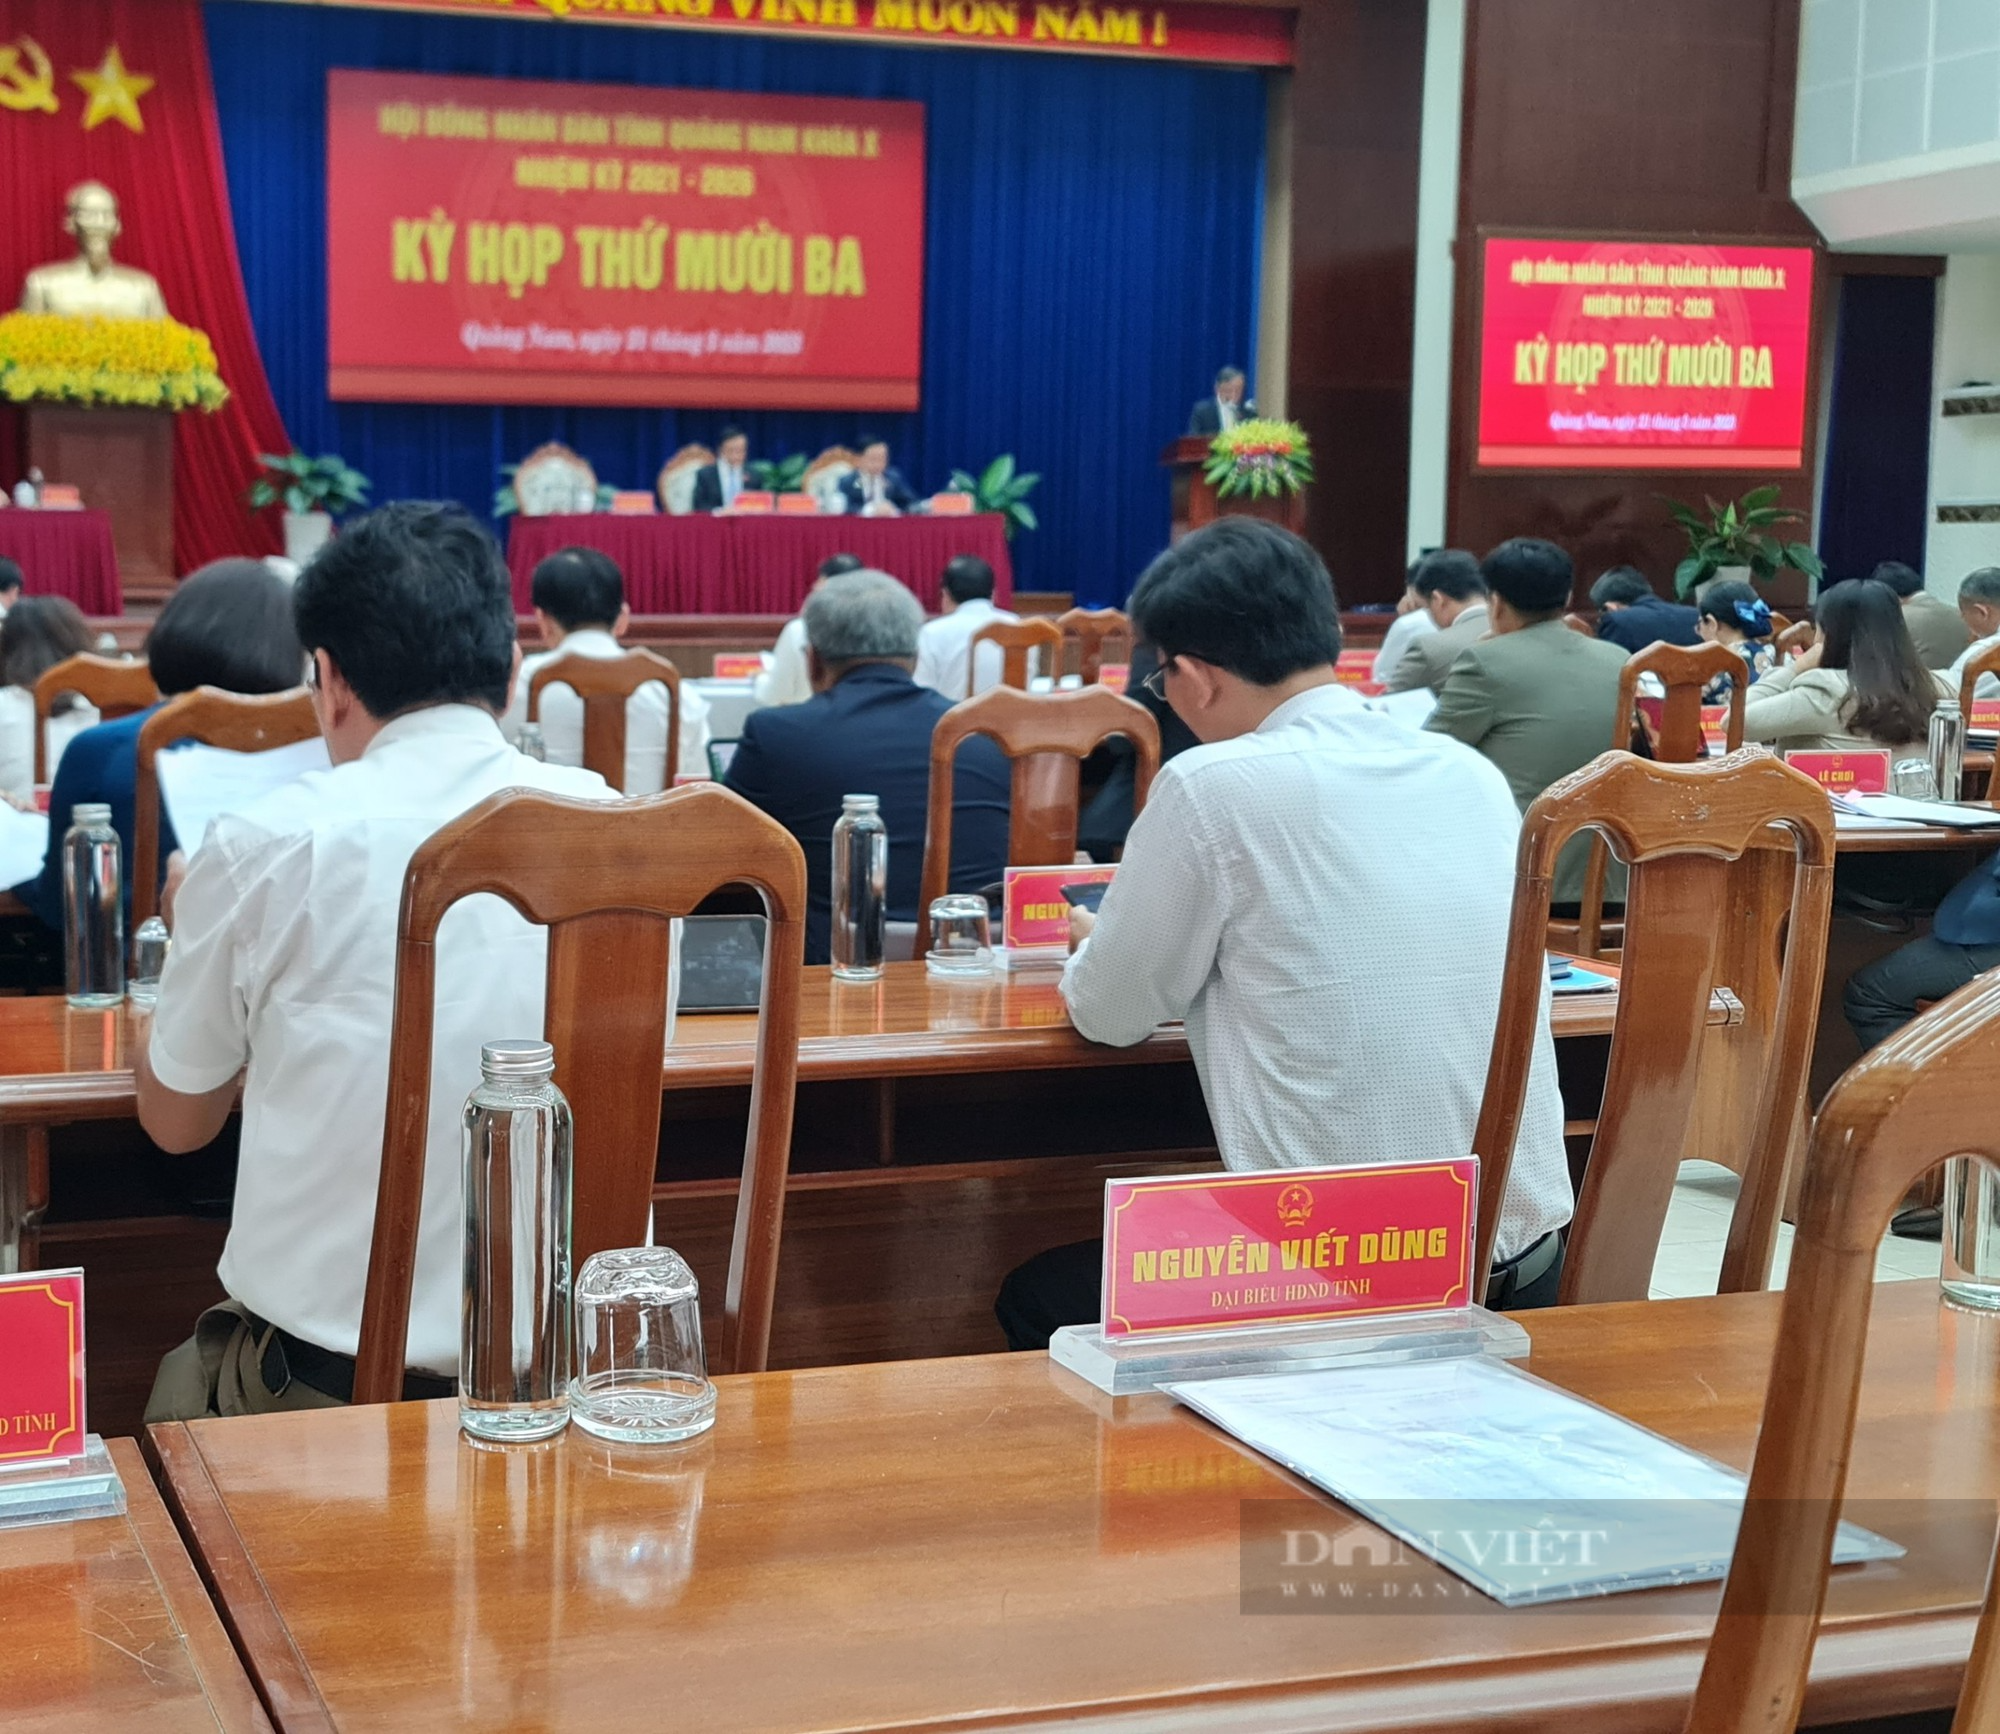 Đại biểu Nguyễn Viết Dũng vắng mặt tại kỳ họp thứ 13, HĐND Quảng Nam - Ảnh 1.